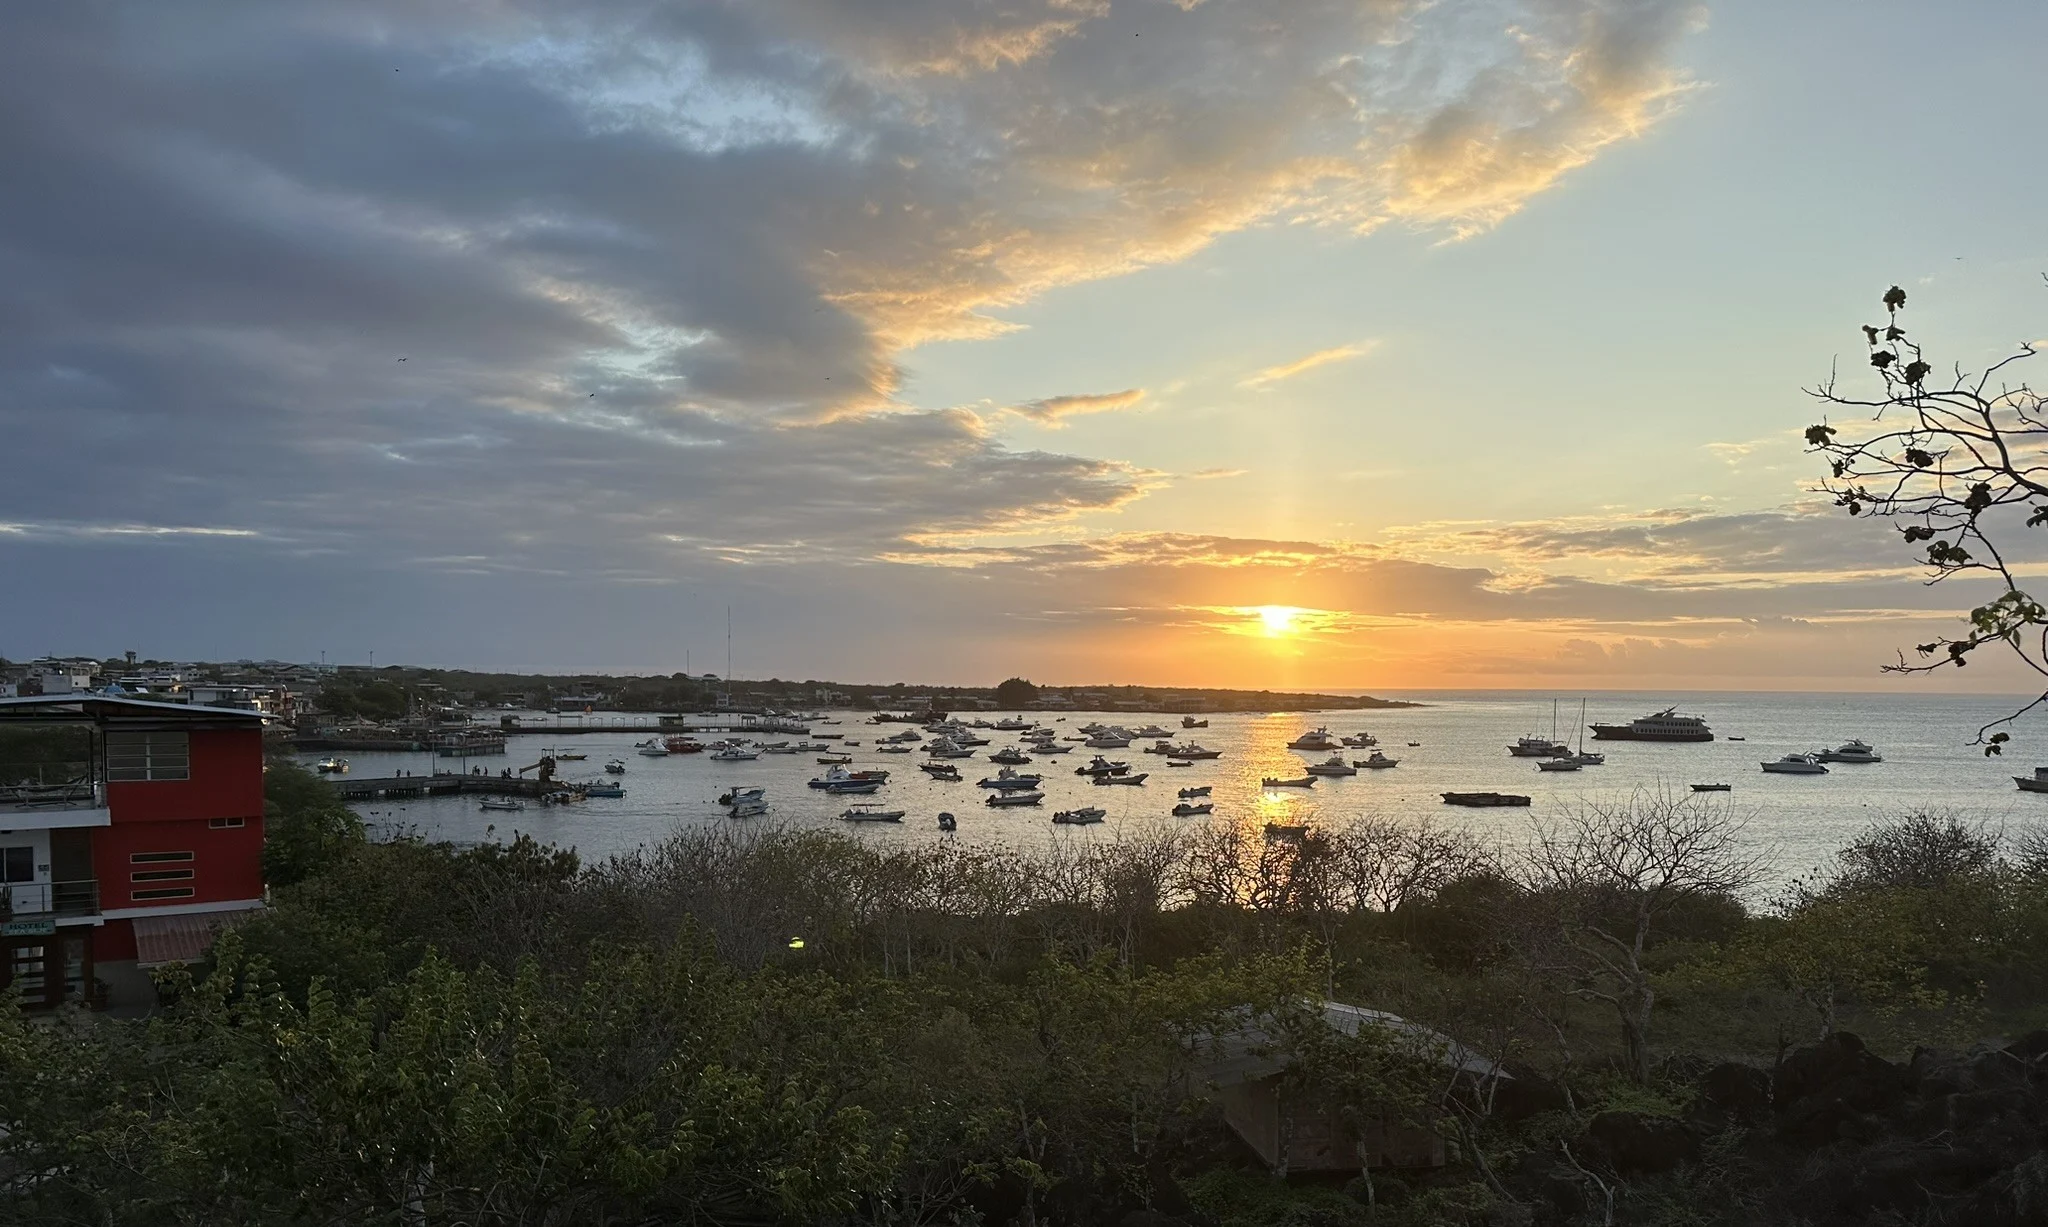 san cristobal galapagos harbor at sunset